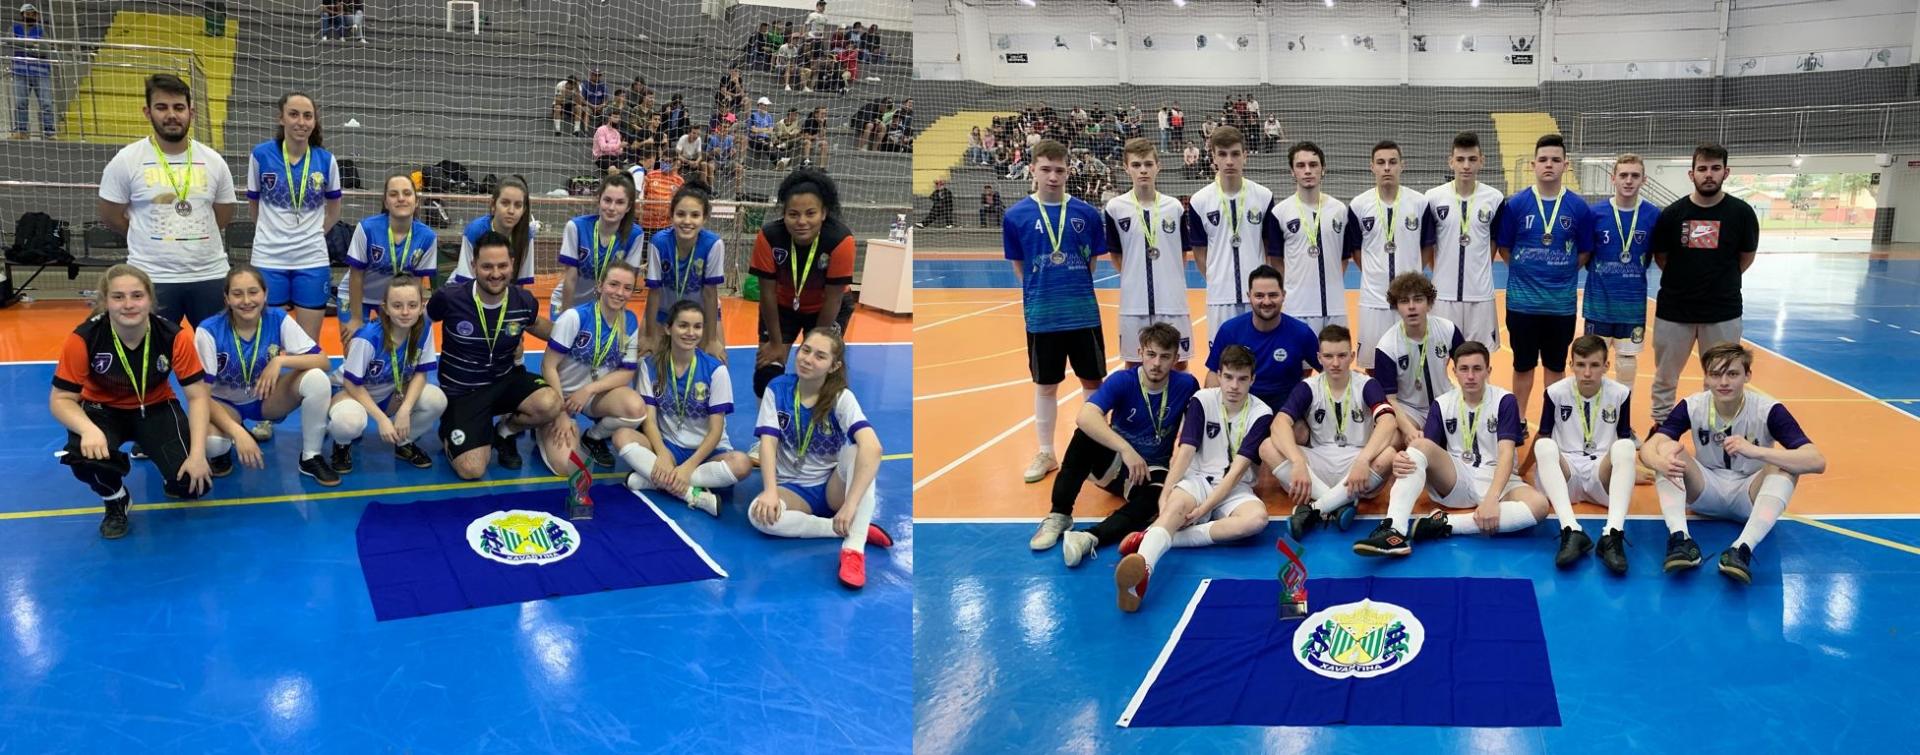 Futsal de Xavantina fica Vice Campeão nas categorias Masculino e Feminino na Olesc 2021, em Xanxerê